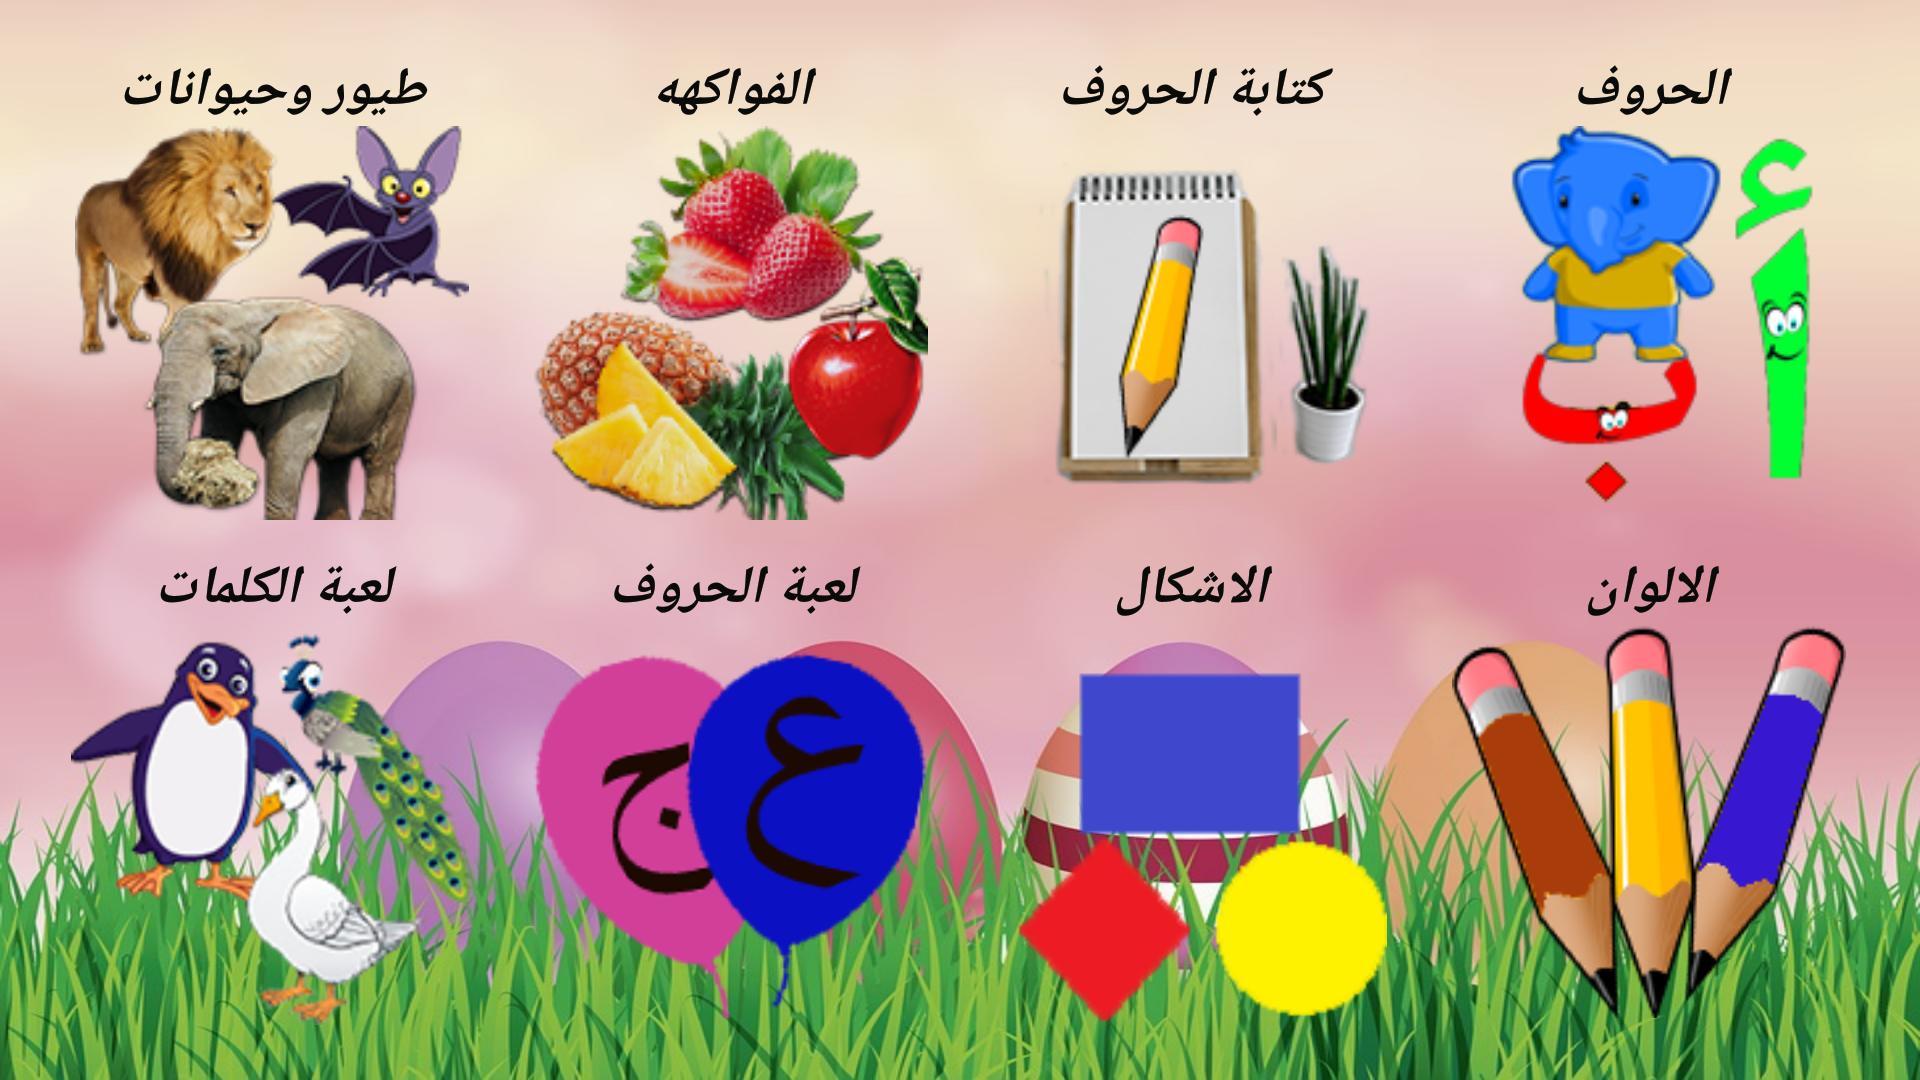 تعليم الحروف العربية والالوان والكلمات للأطفال for Android - APK Download